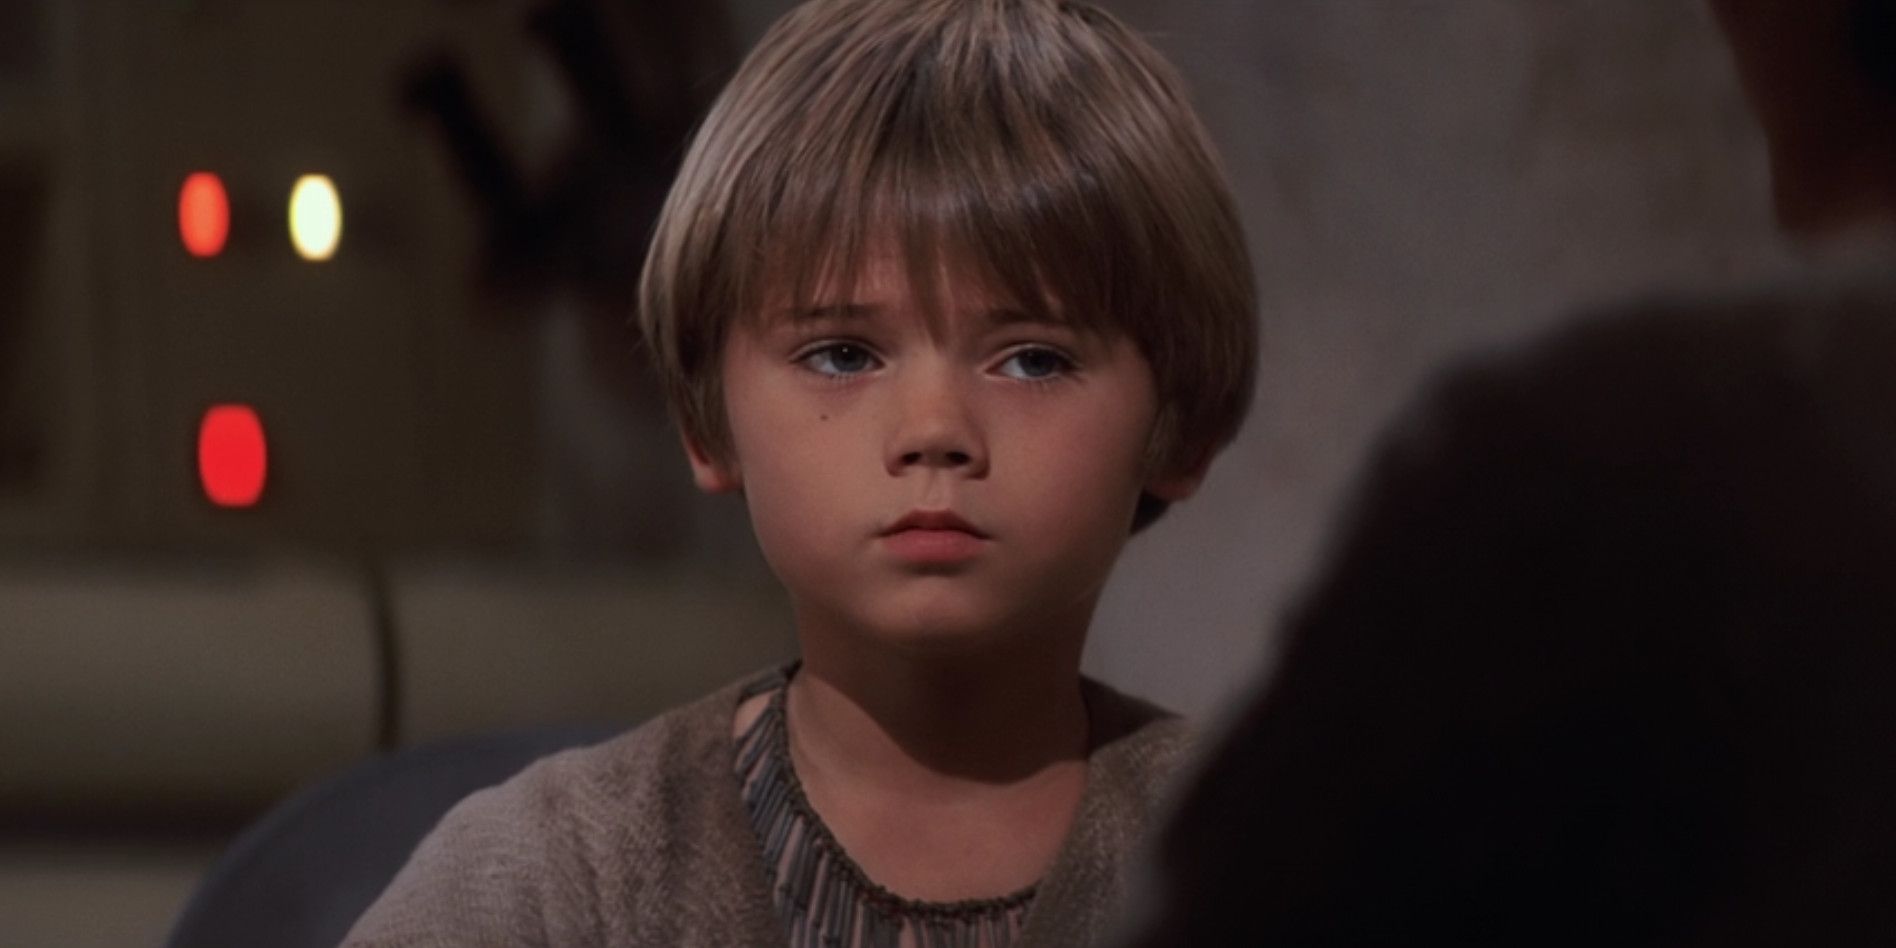 Anakin Skywalker Looking Sad in Star Wars: The Phantom Menace